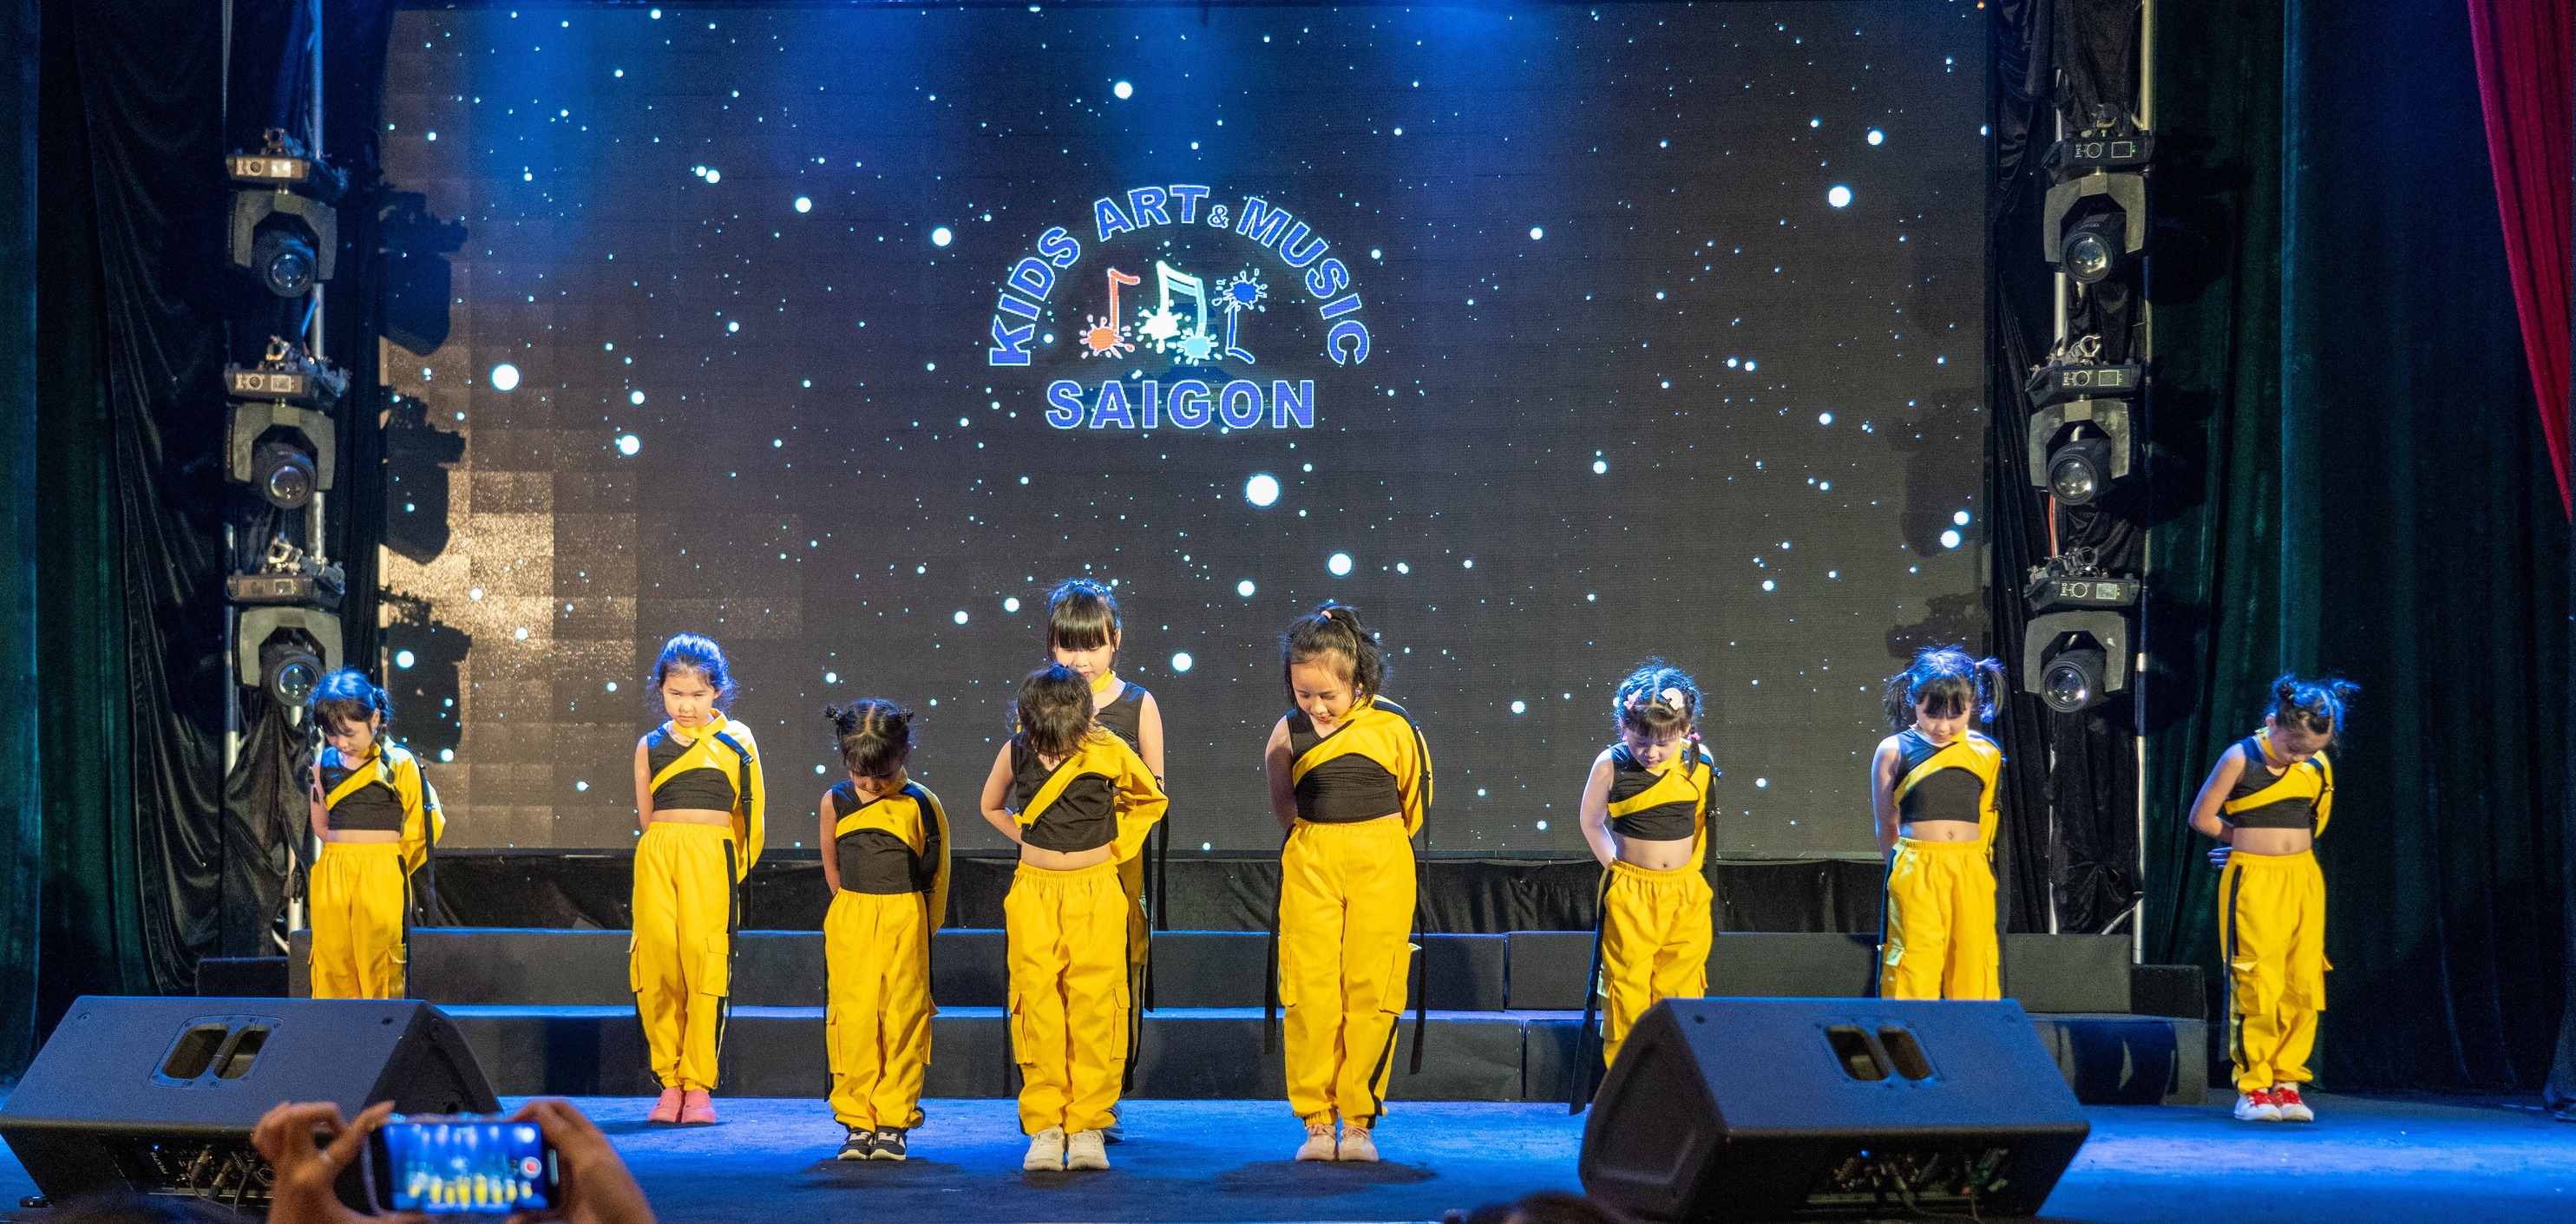 Lớp nhảy hiện đại cho bé 6 tuổi tại Kids Art & Music Saigon